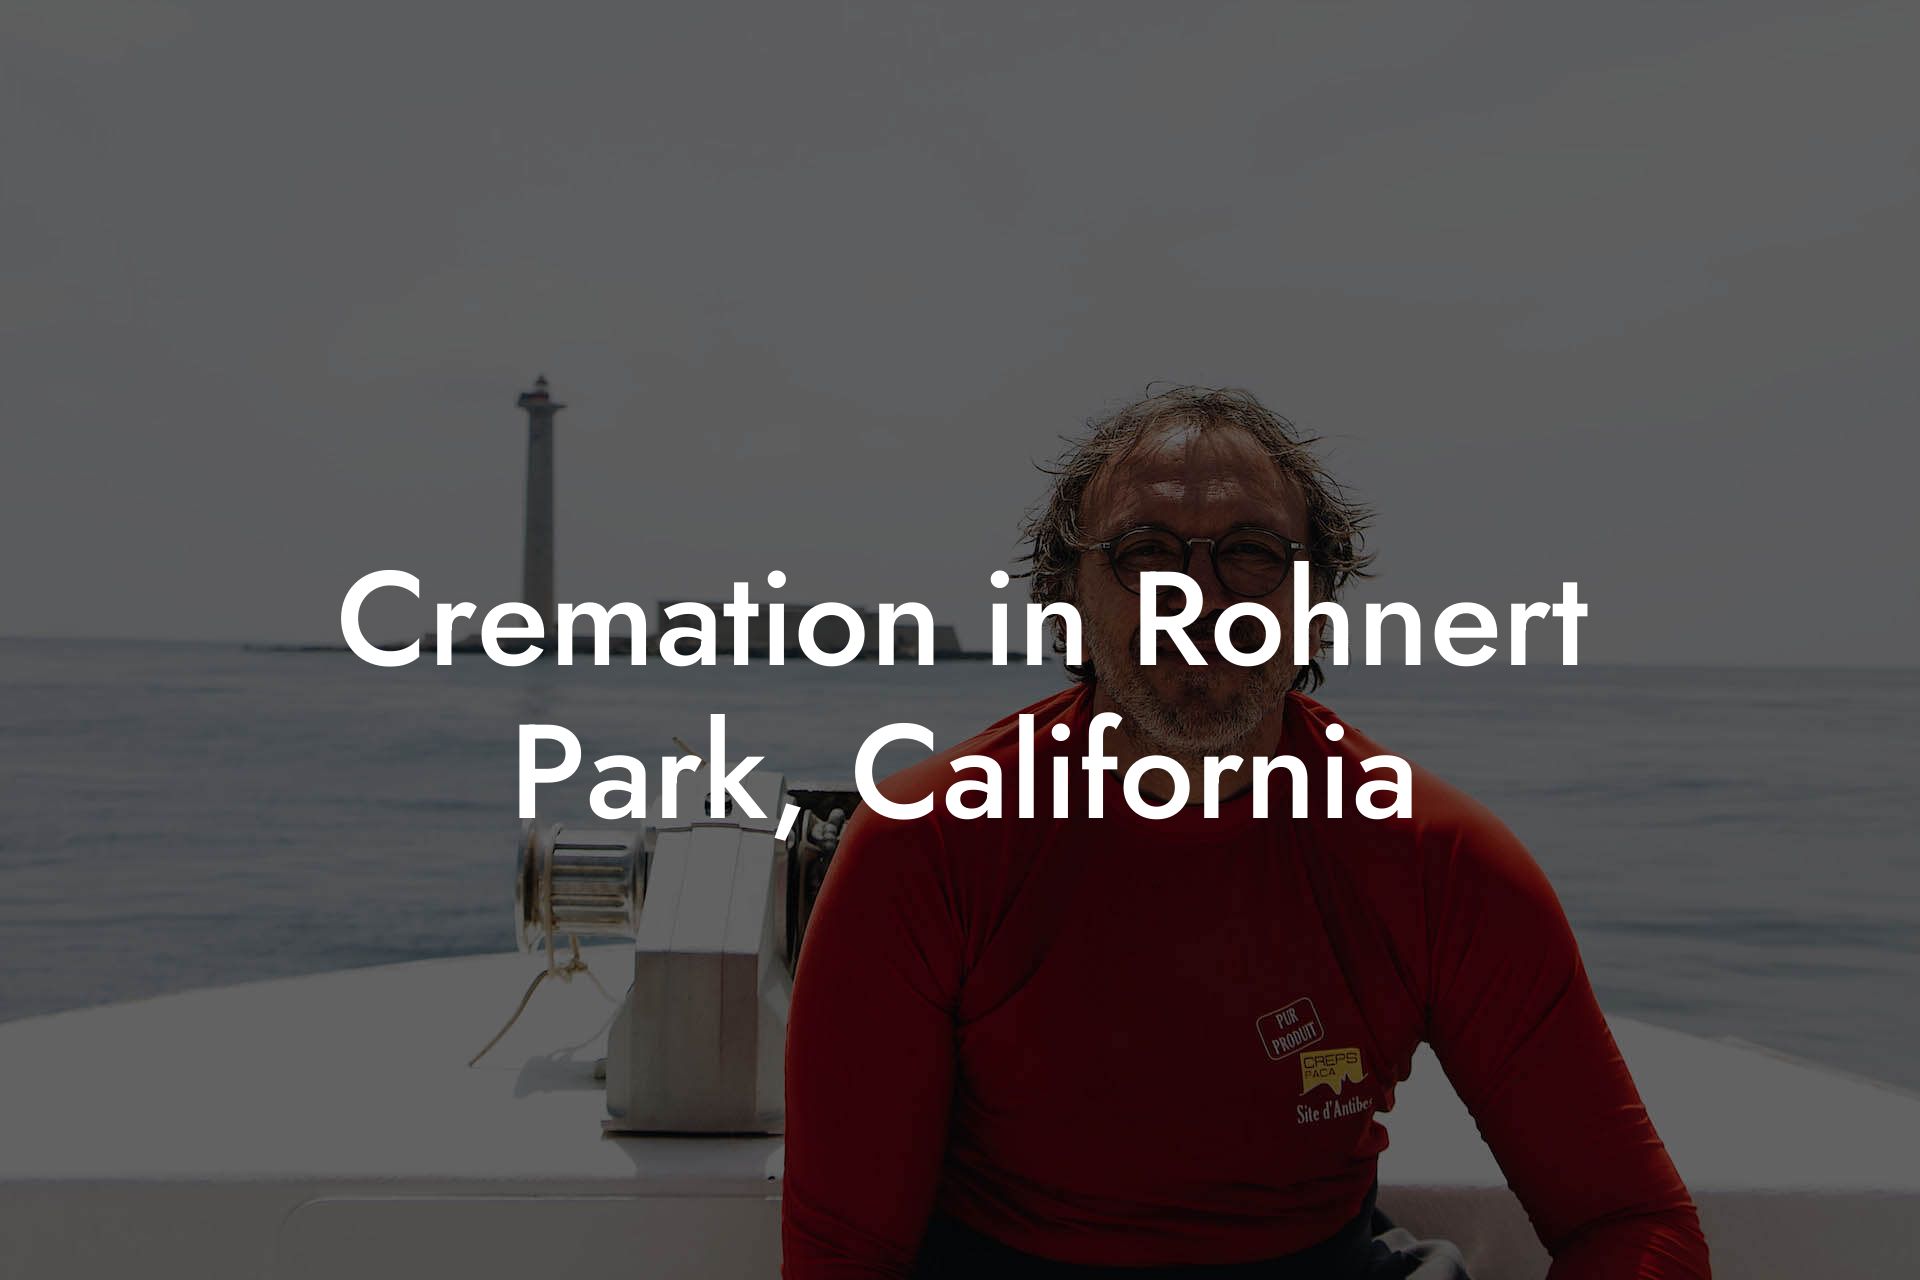 Cremation in Rohnert Park, California